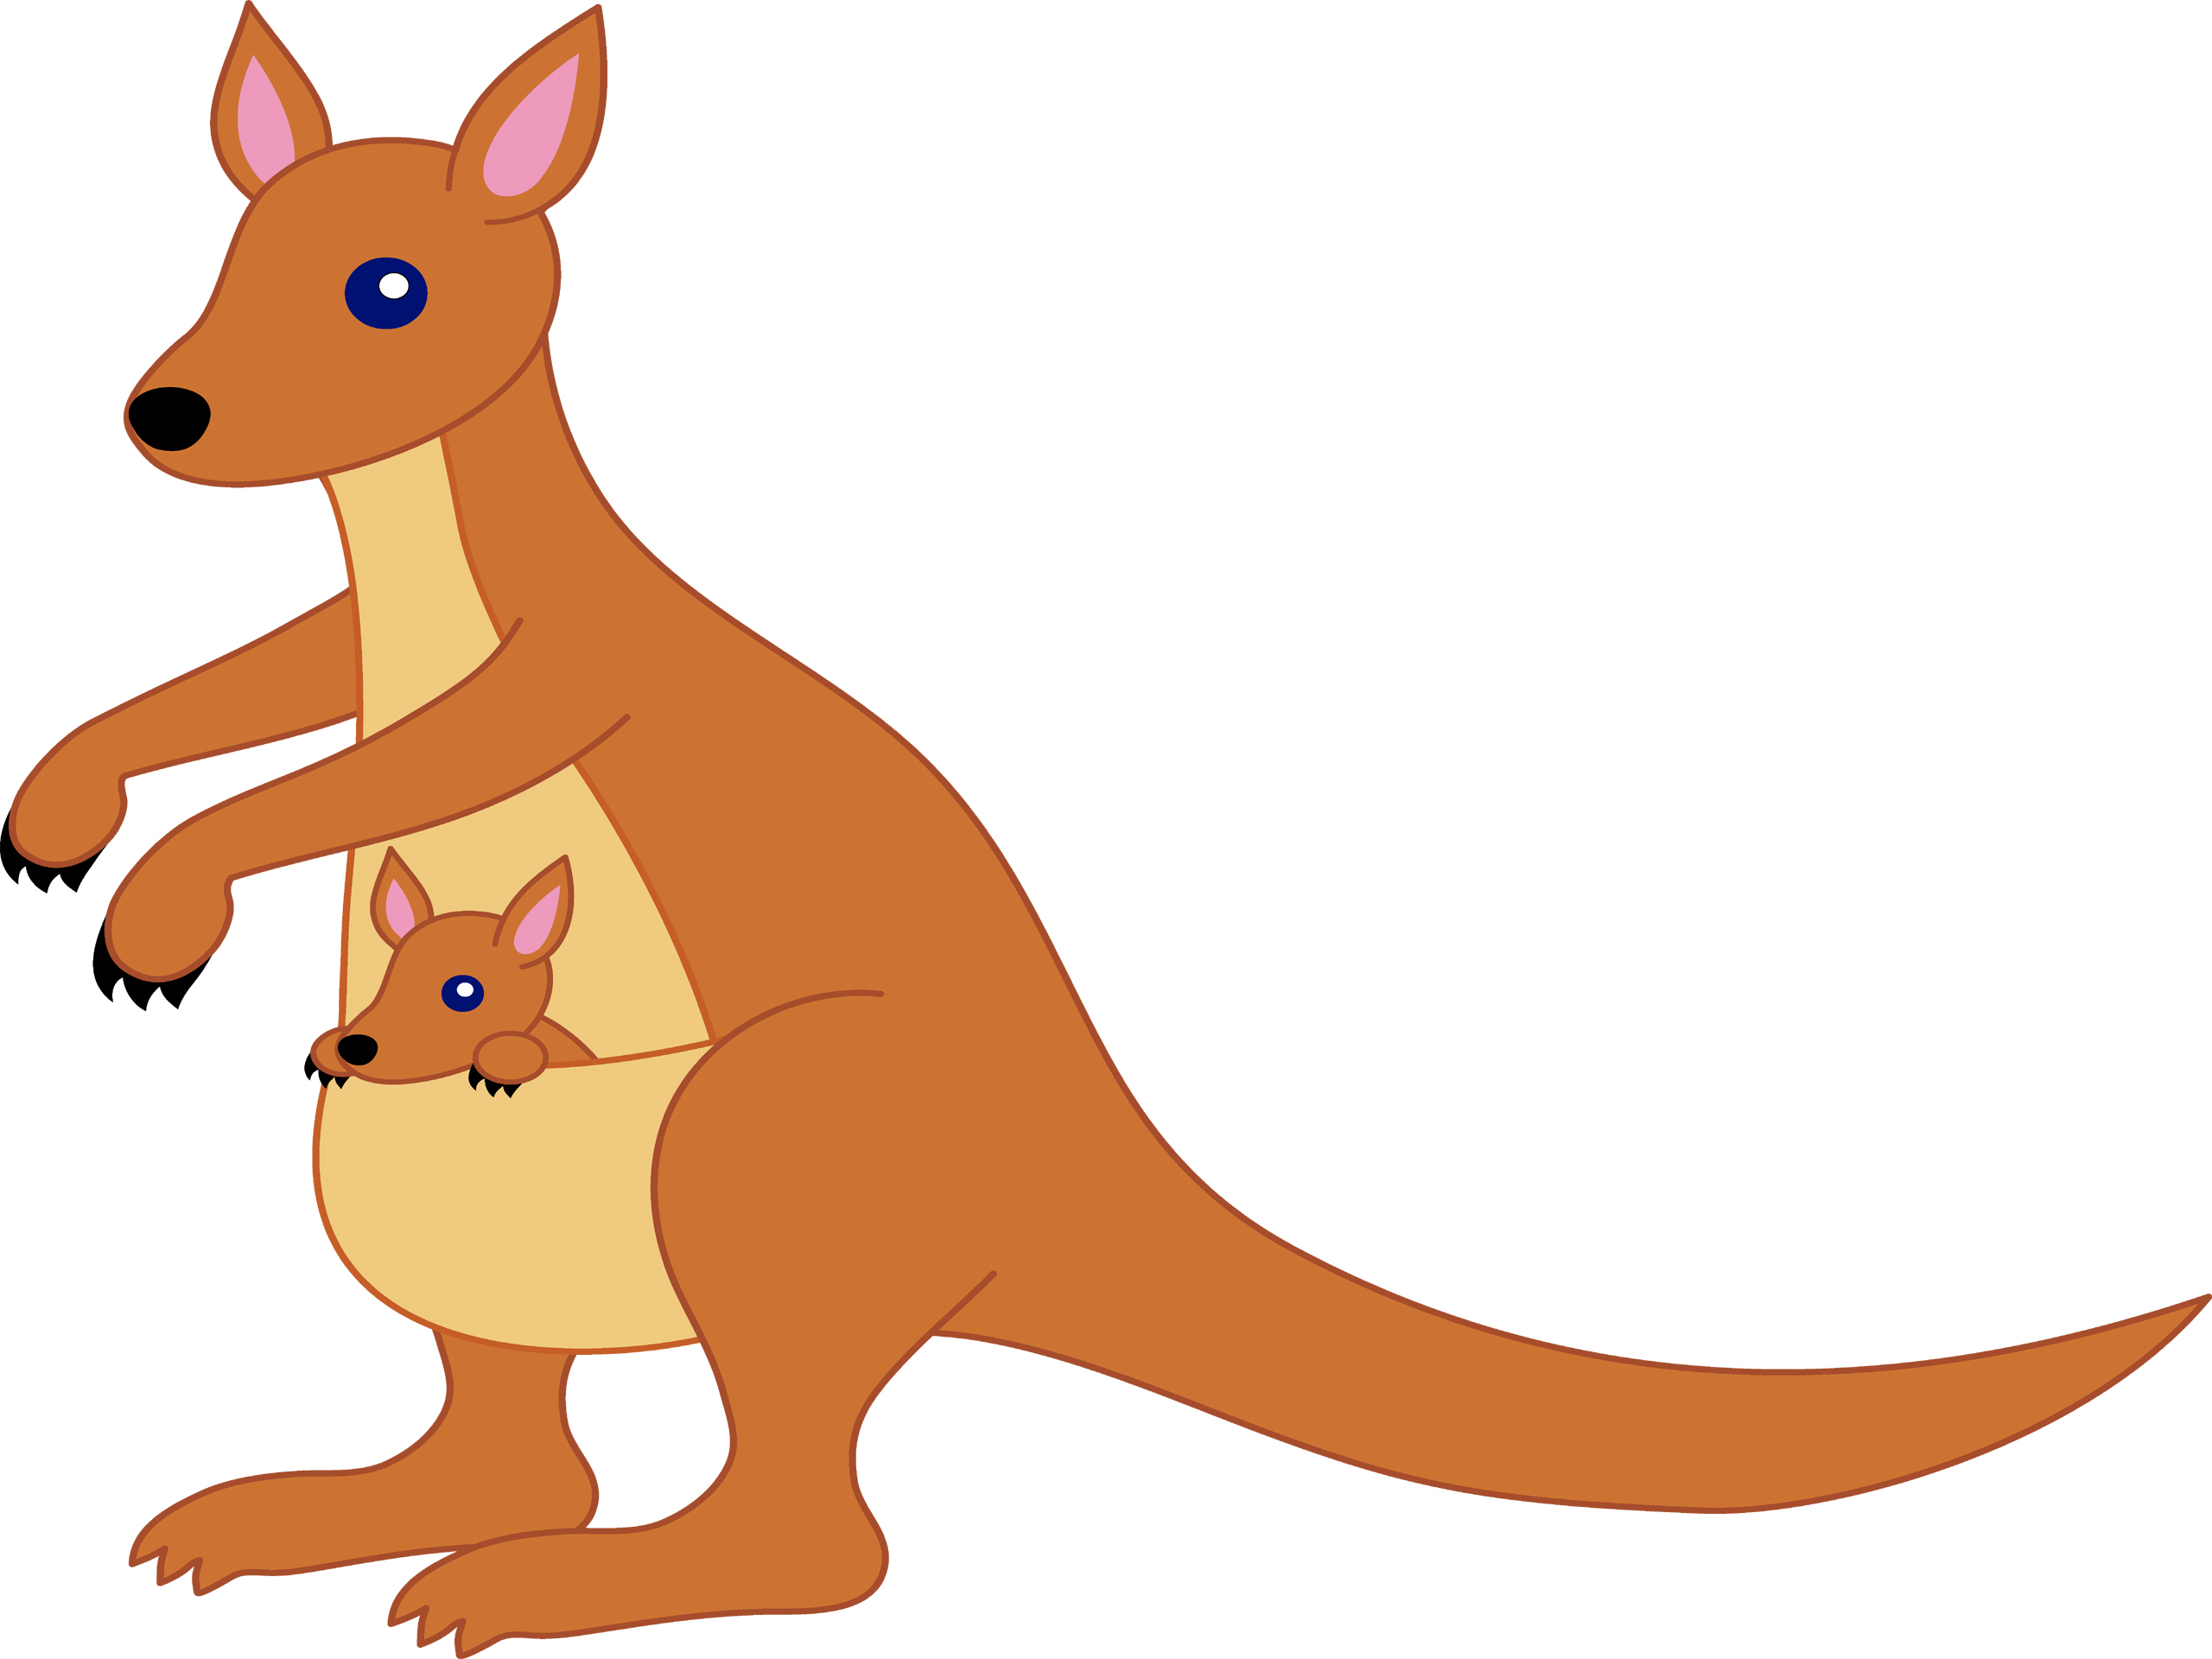 Kangaroo images clip art